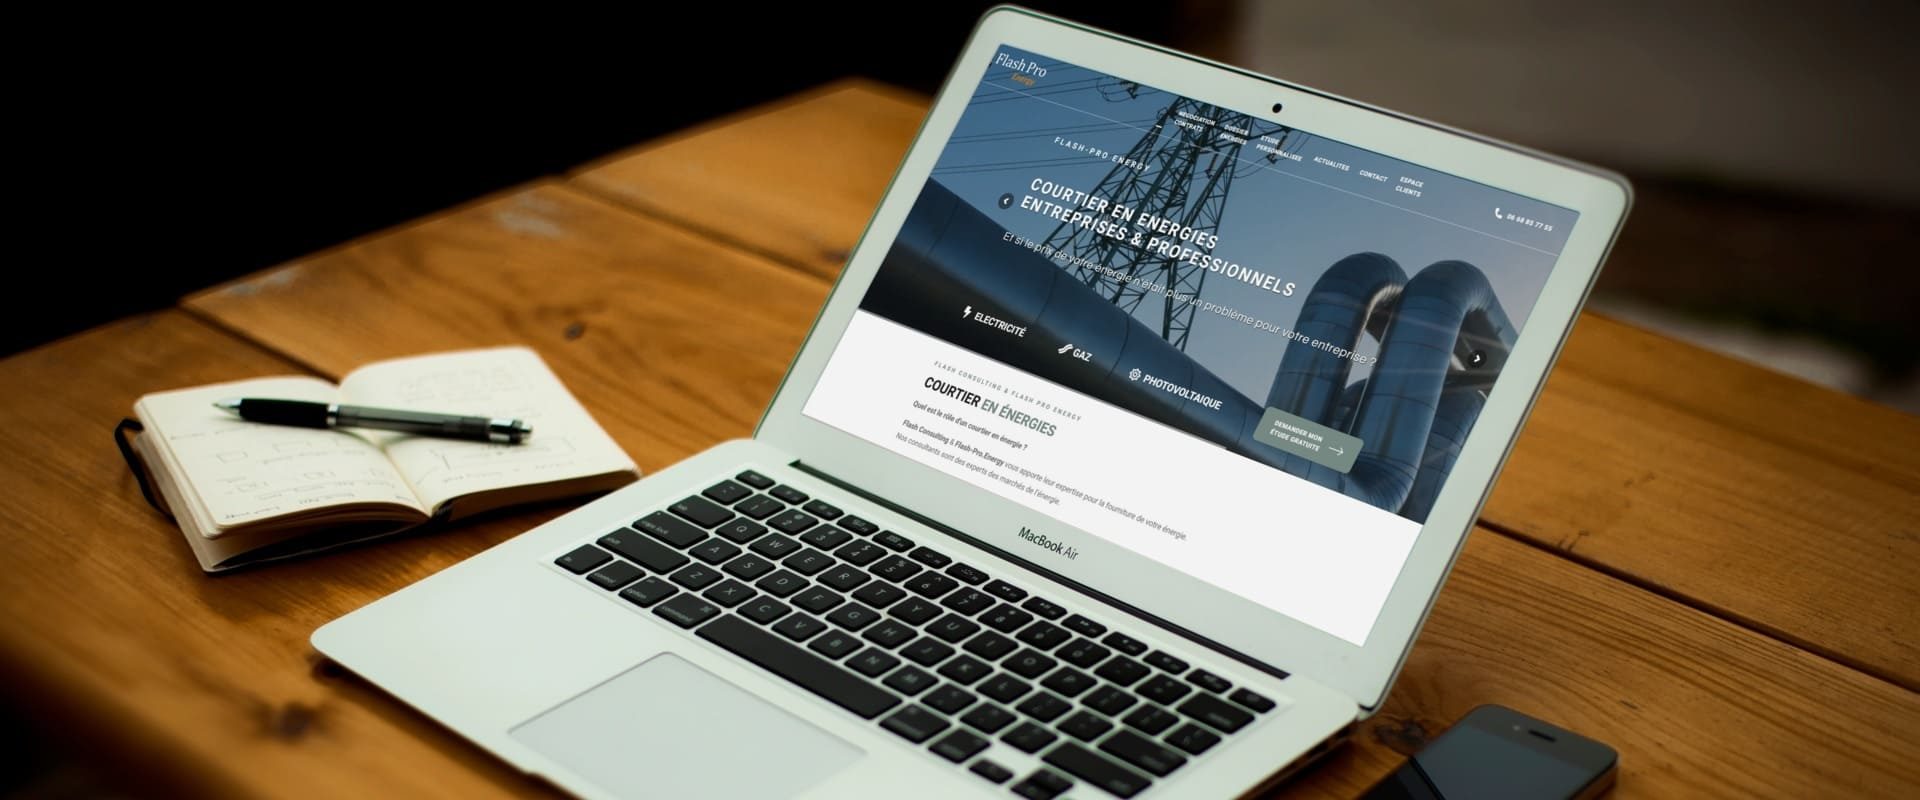 Courtier énergie Professionnel montpellier toulouse - creation nouveau site web flash pro energy courtier en enregies pour entreprises